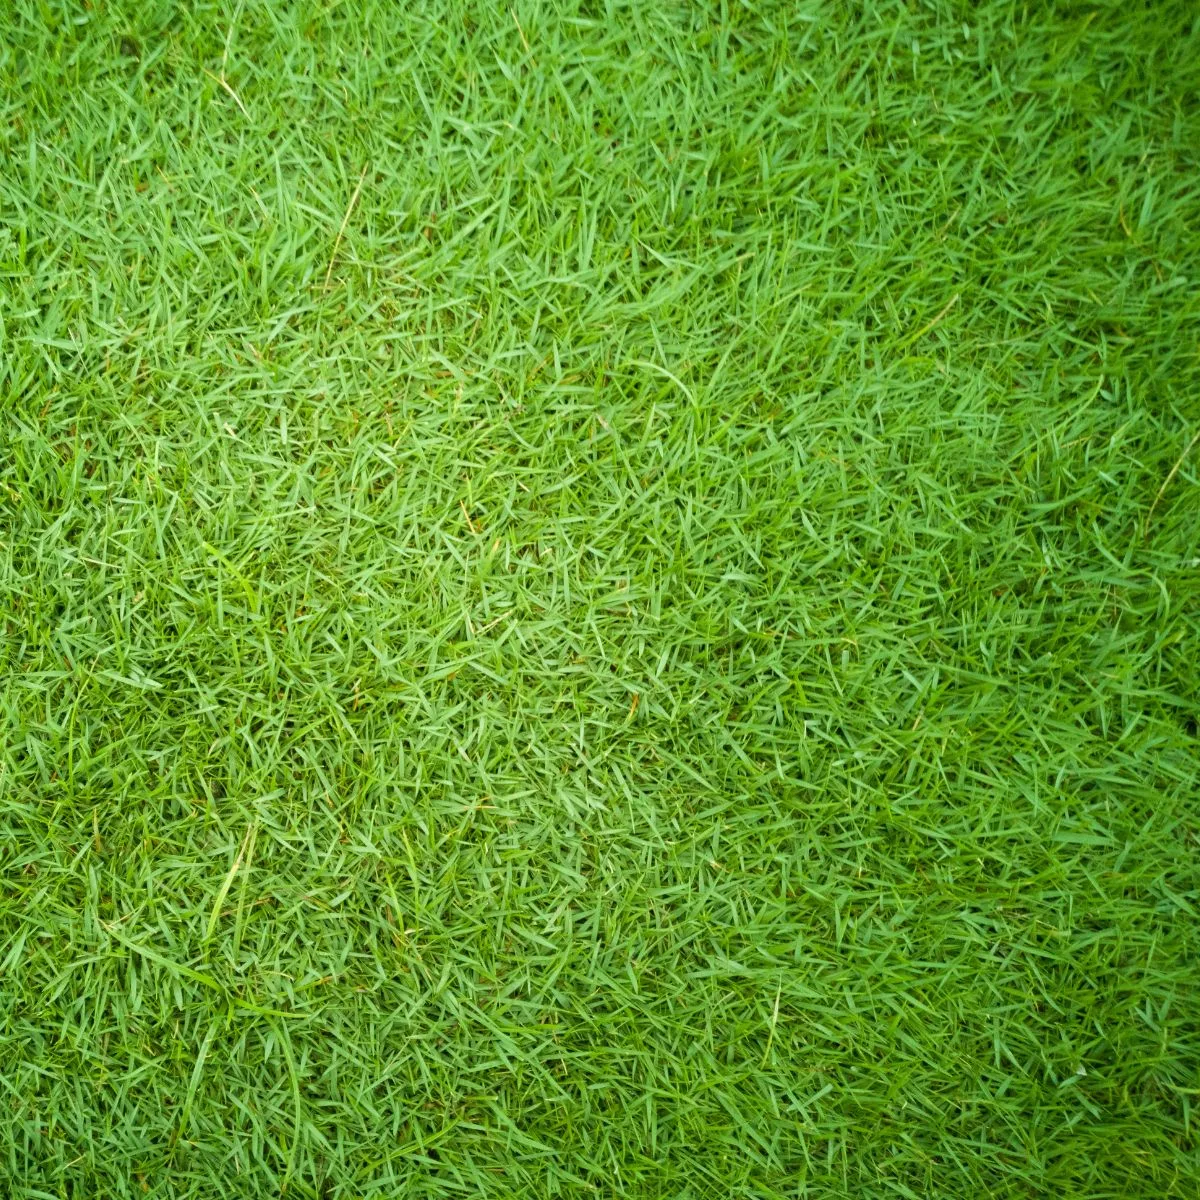 A patch of Bermuda grass.